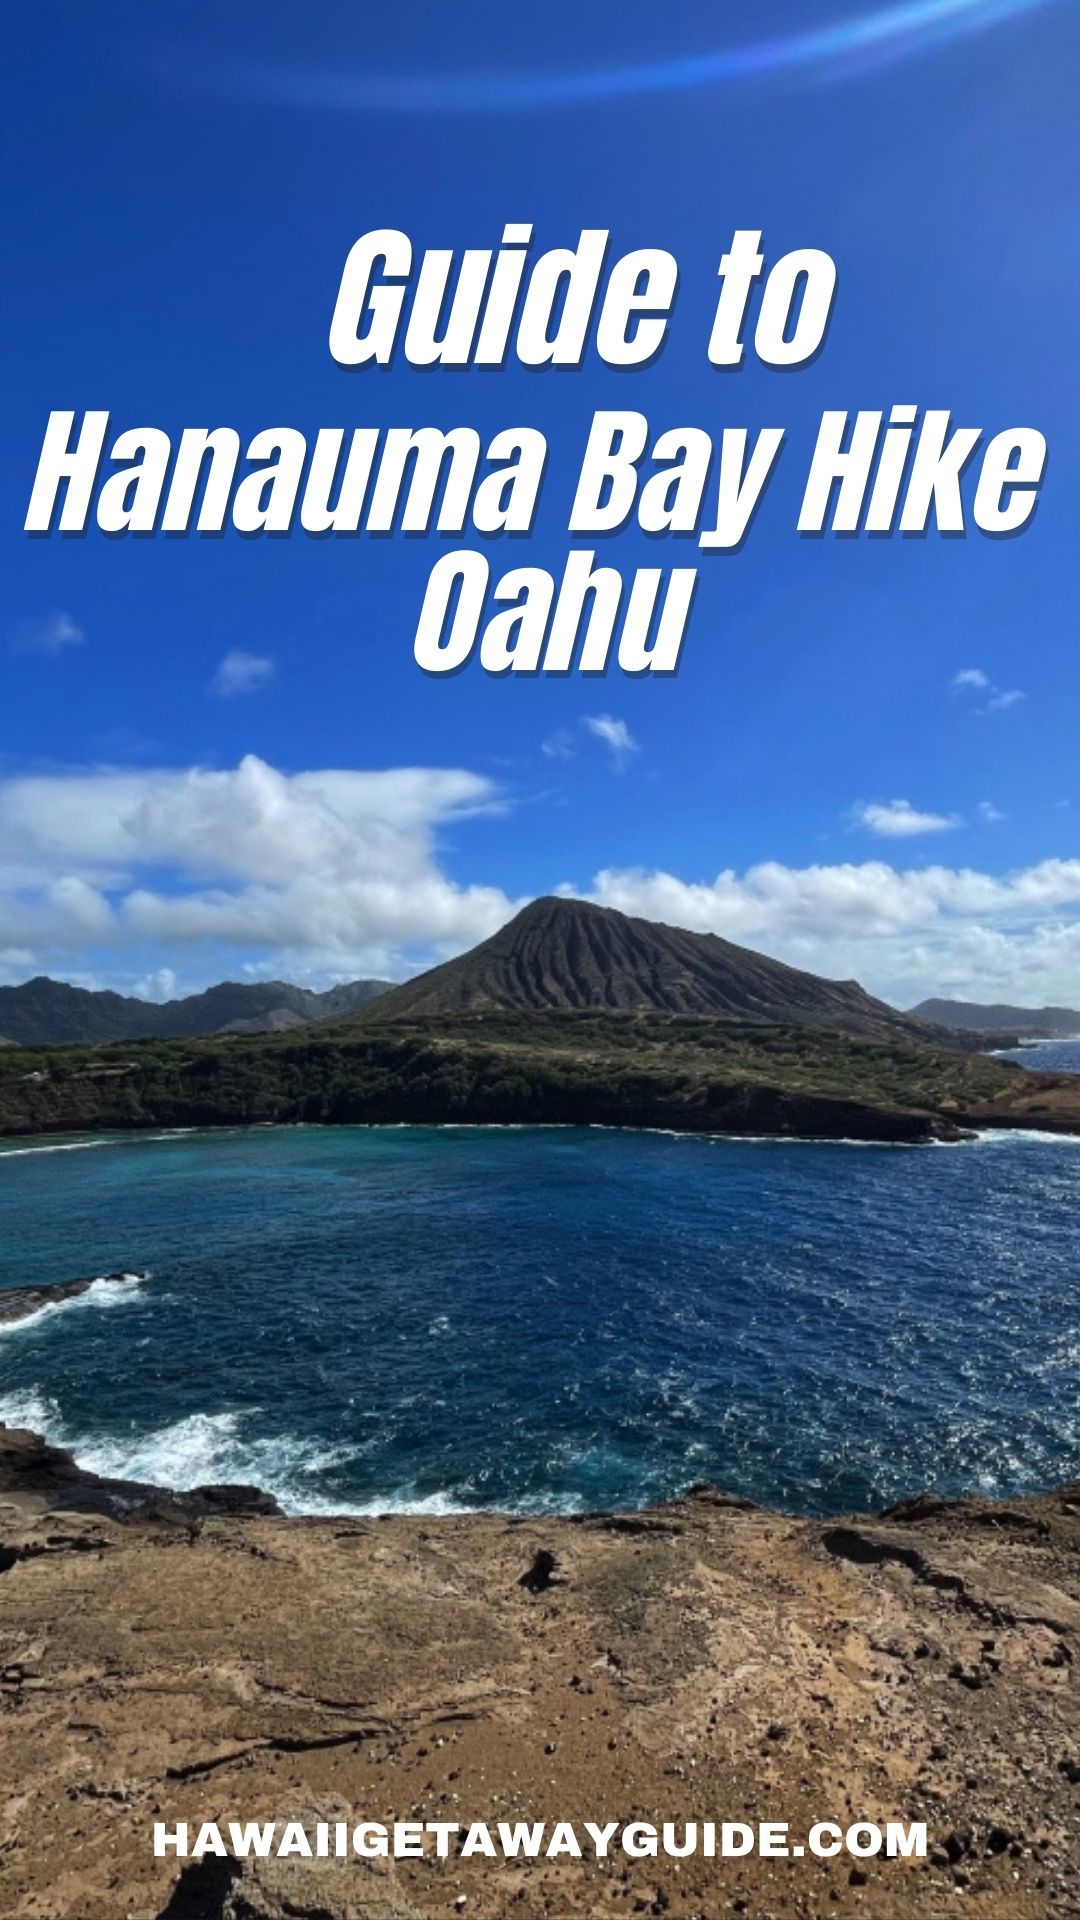 guide to hanauma bay hike oahu hawaii travel tips